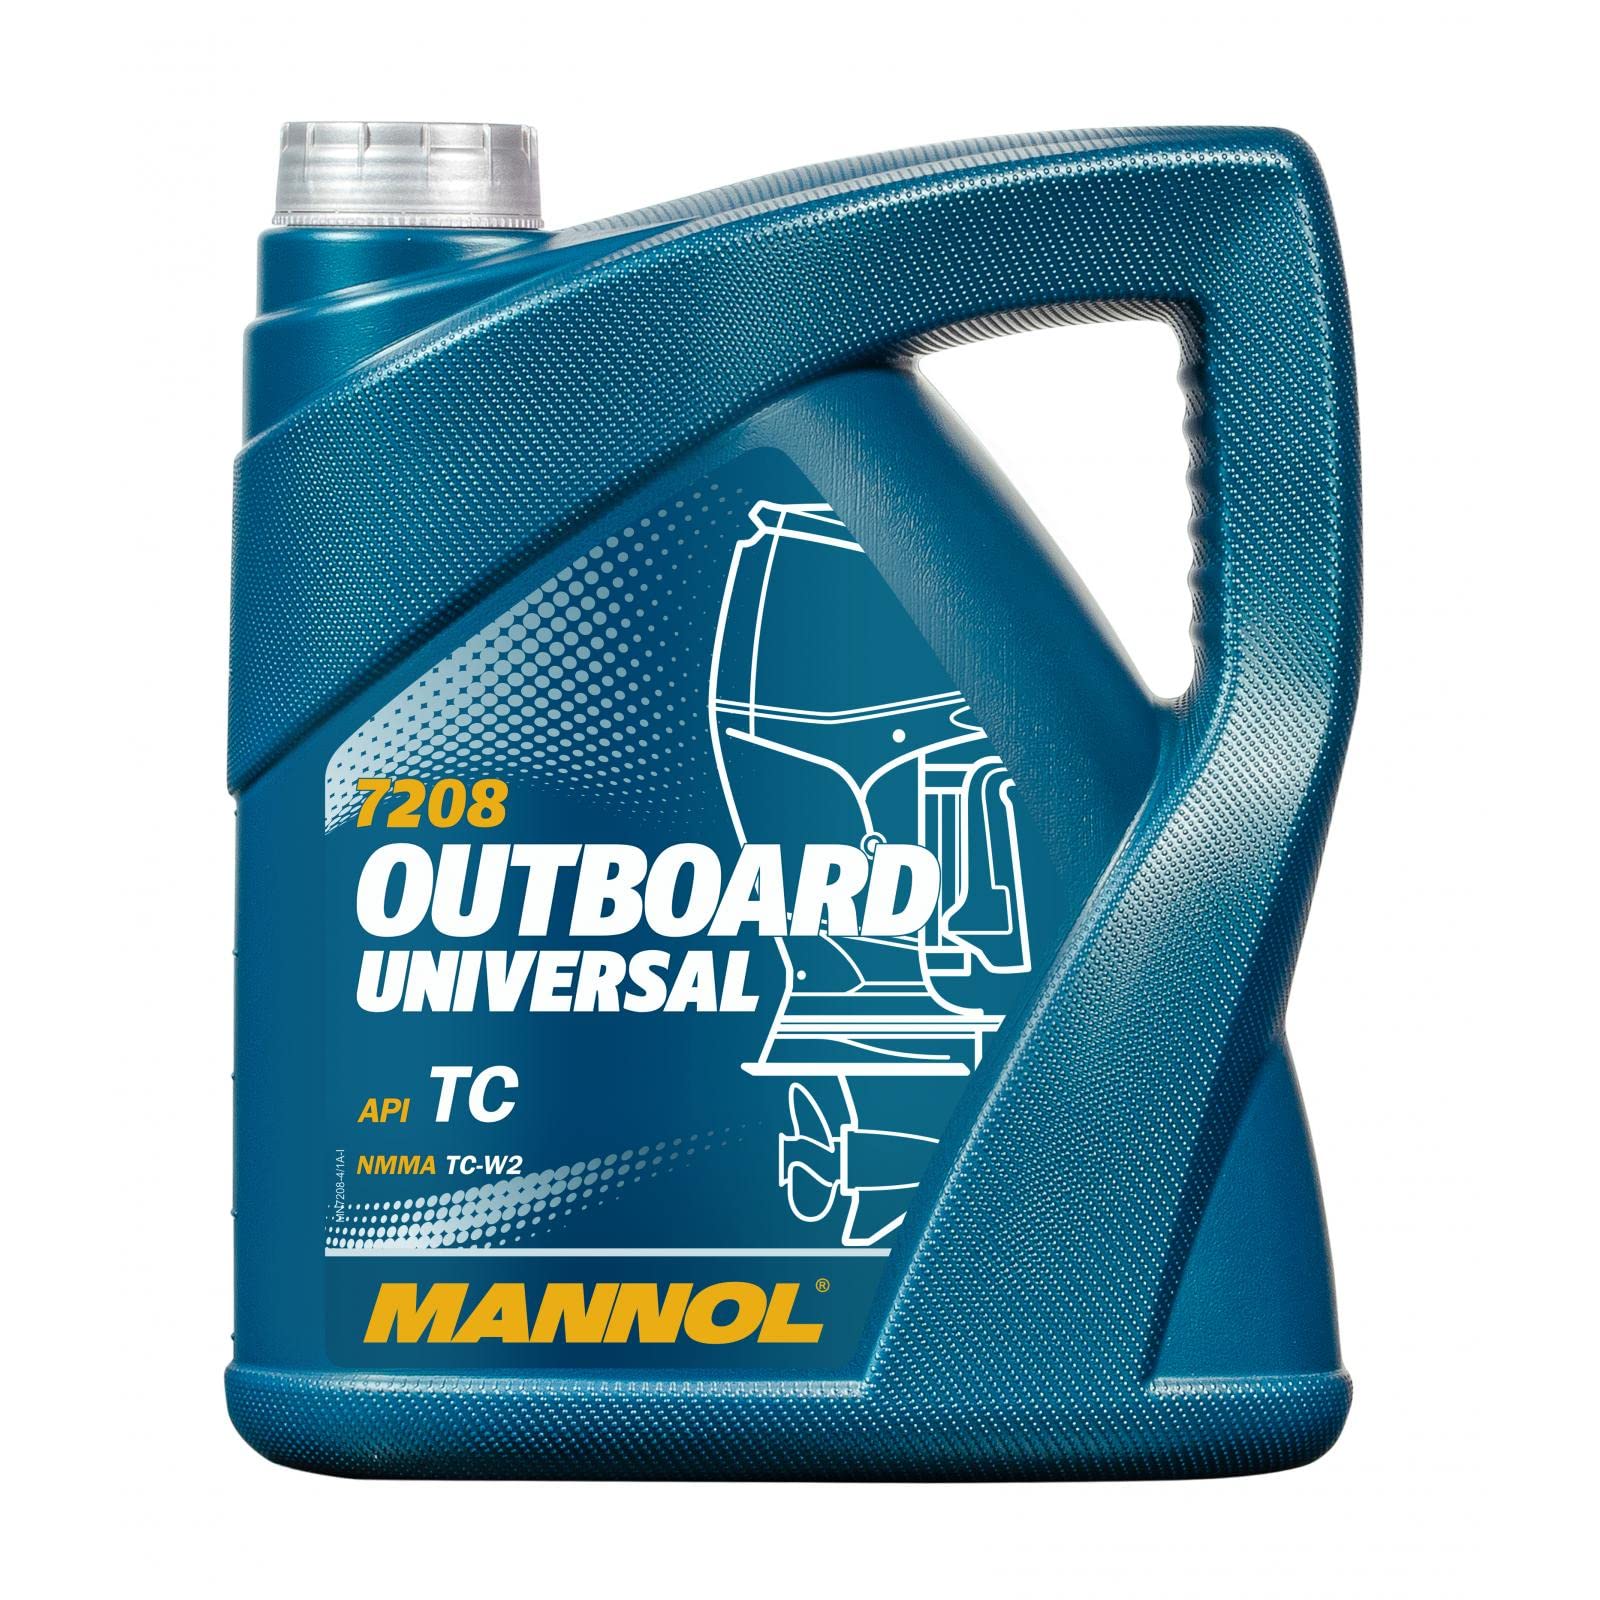 MANNOL Outboard Universal API TC, 4 Liter von MANNOL